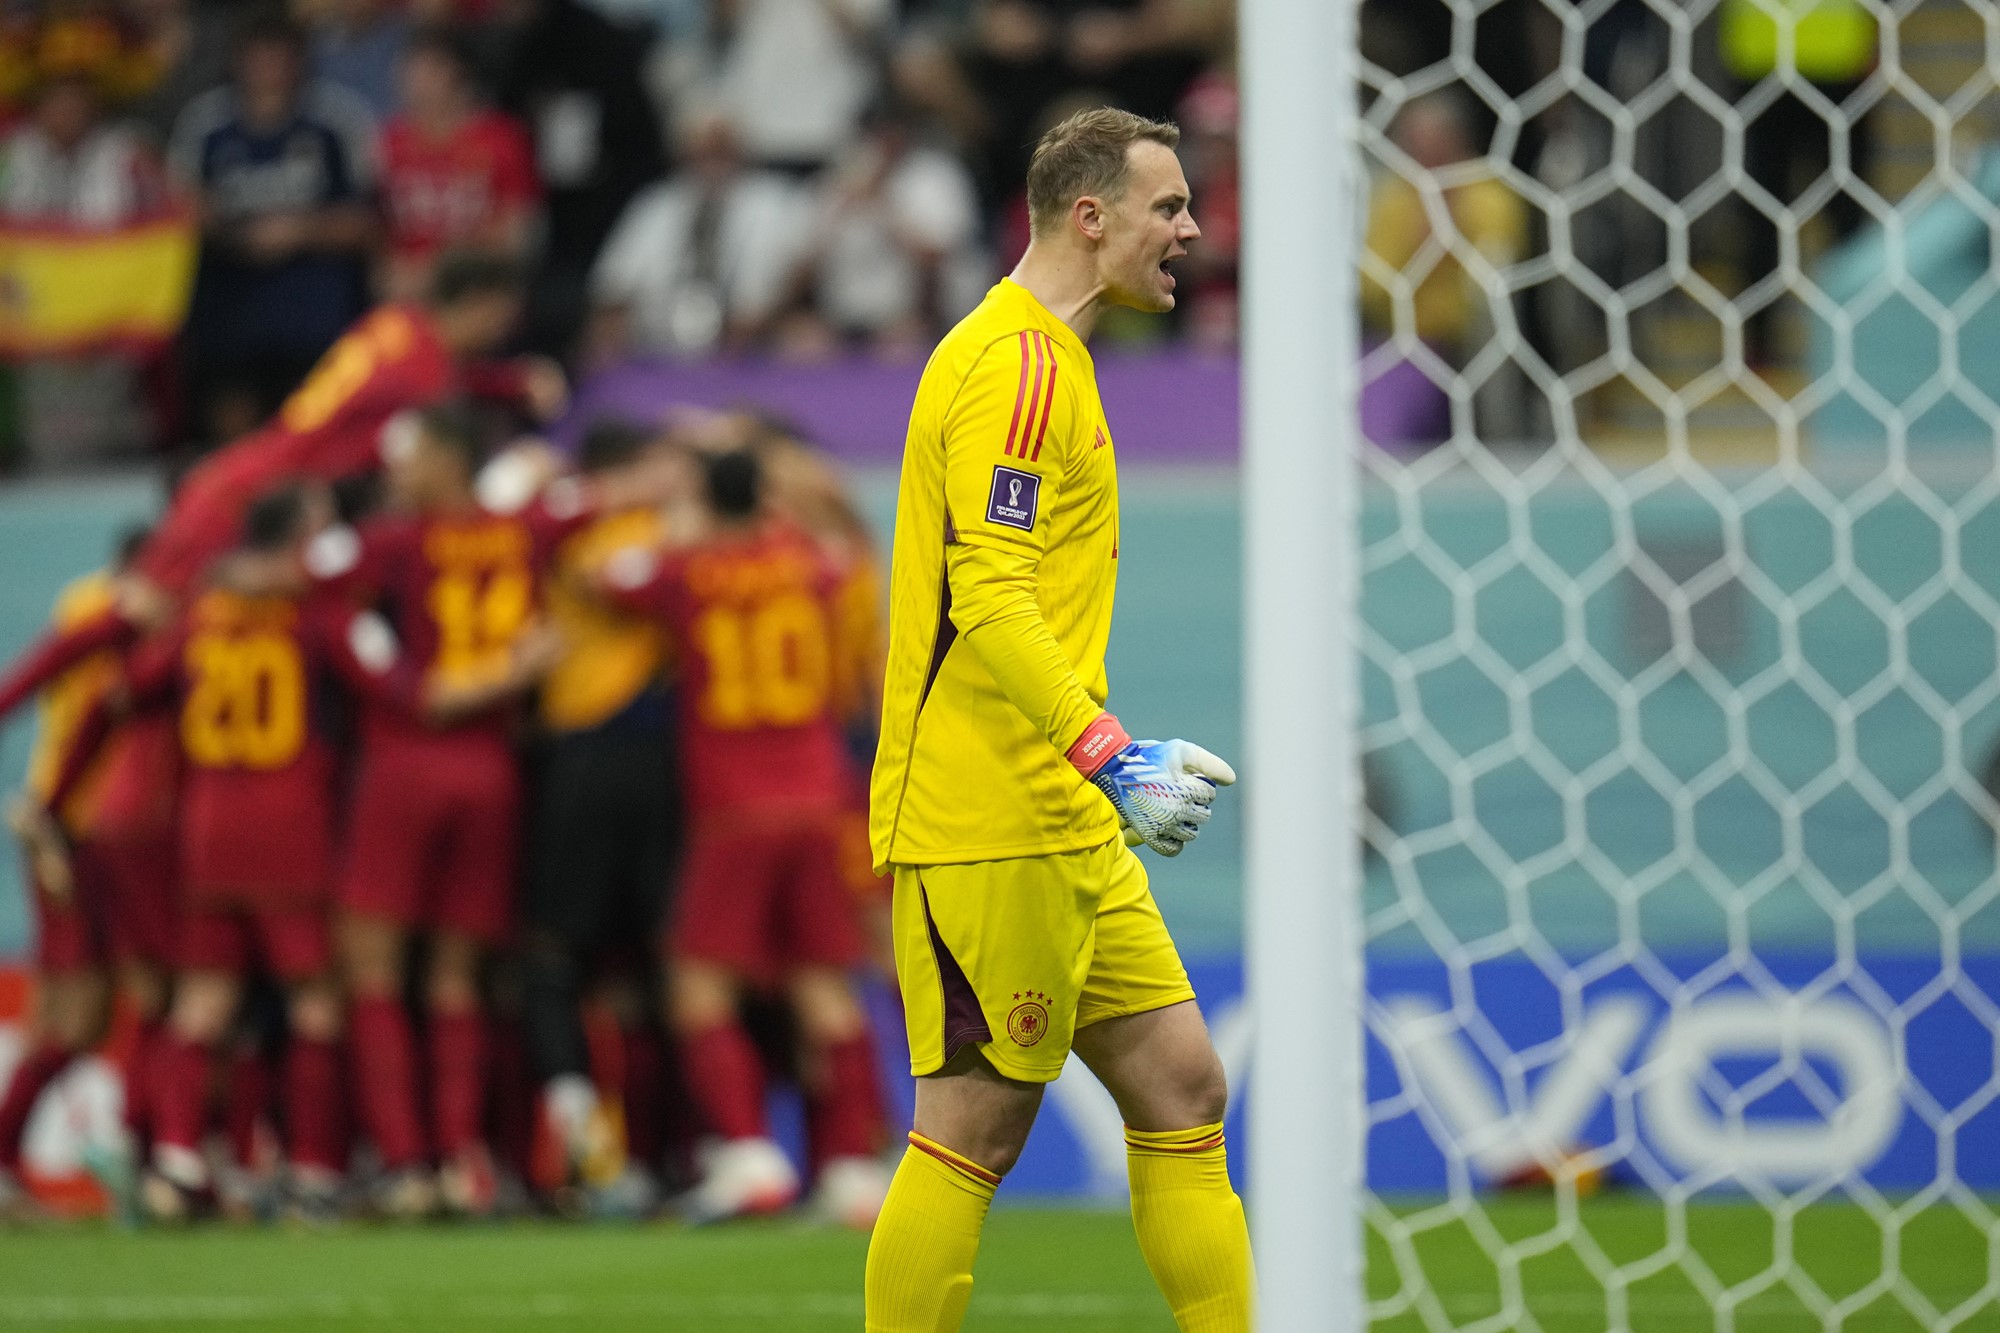 German keeper Manuel Neuer looks dejected as Spain celebrates a goal